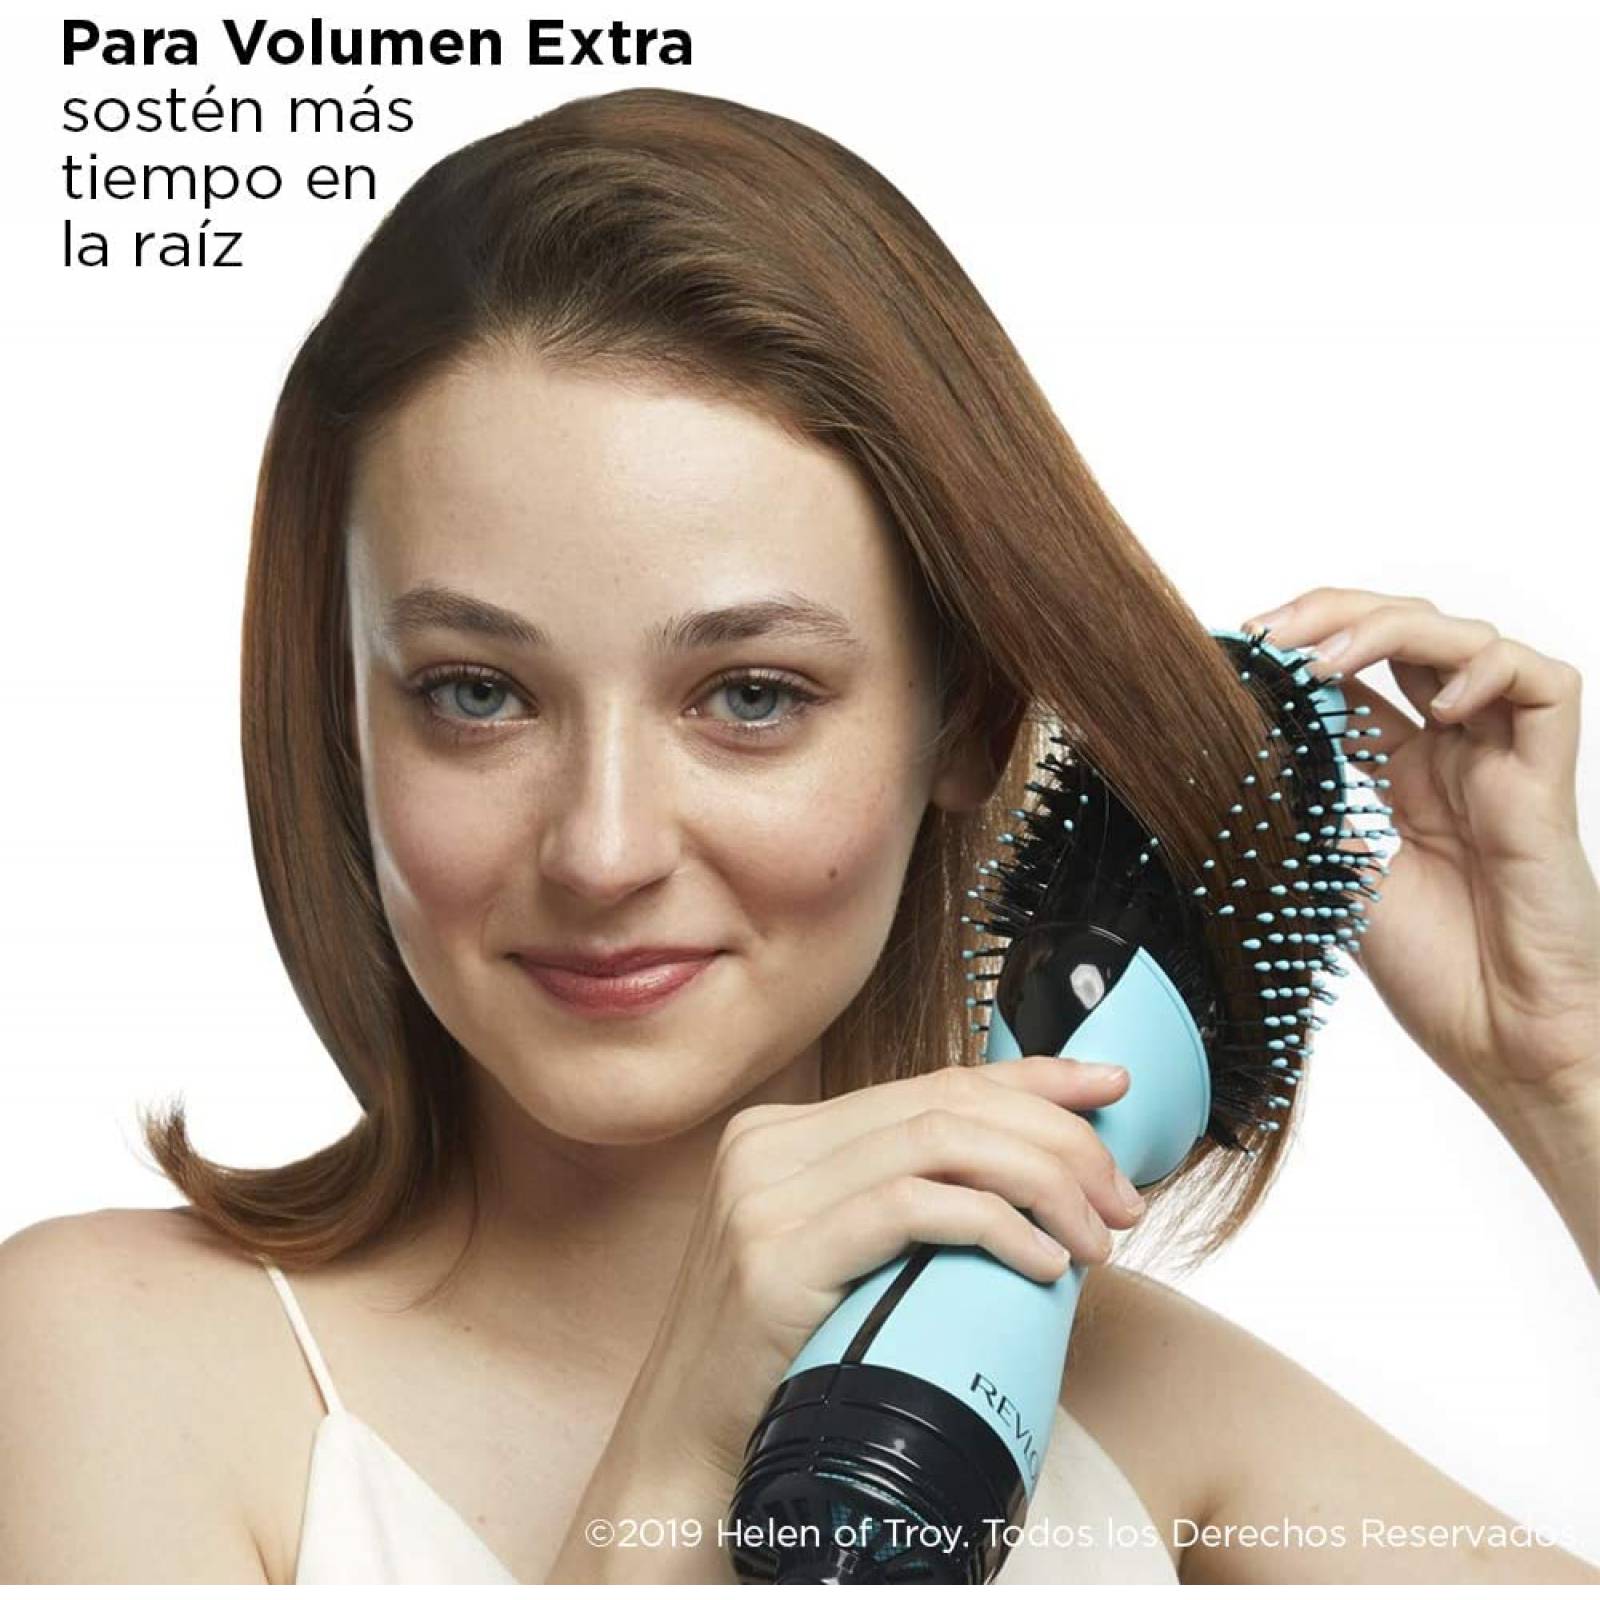 Revlon Cepillo Secador Salon One Step Hair Menta